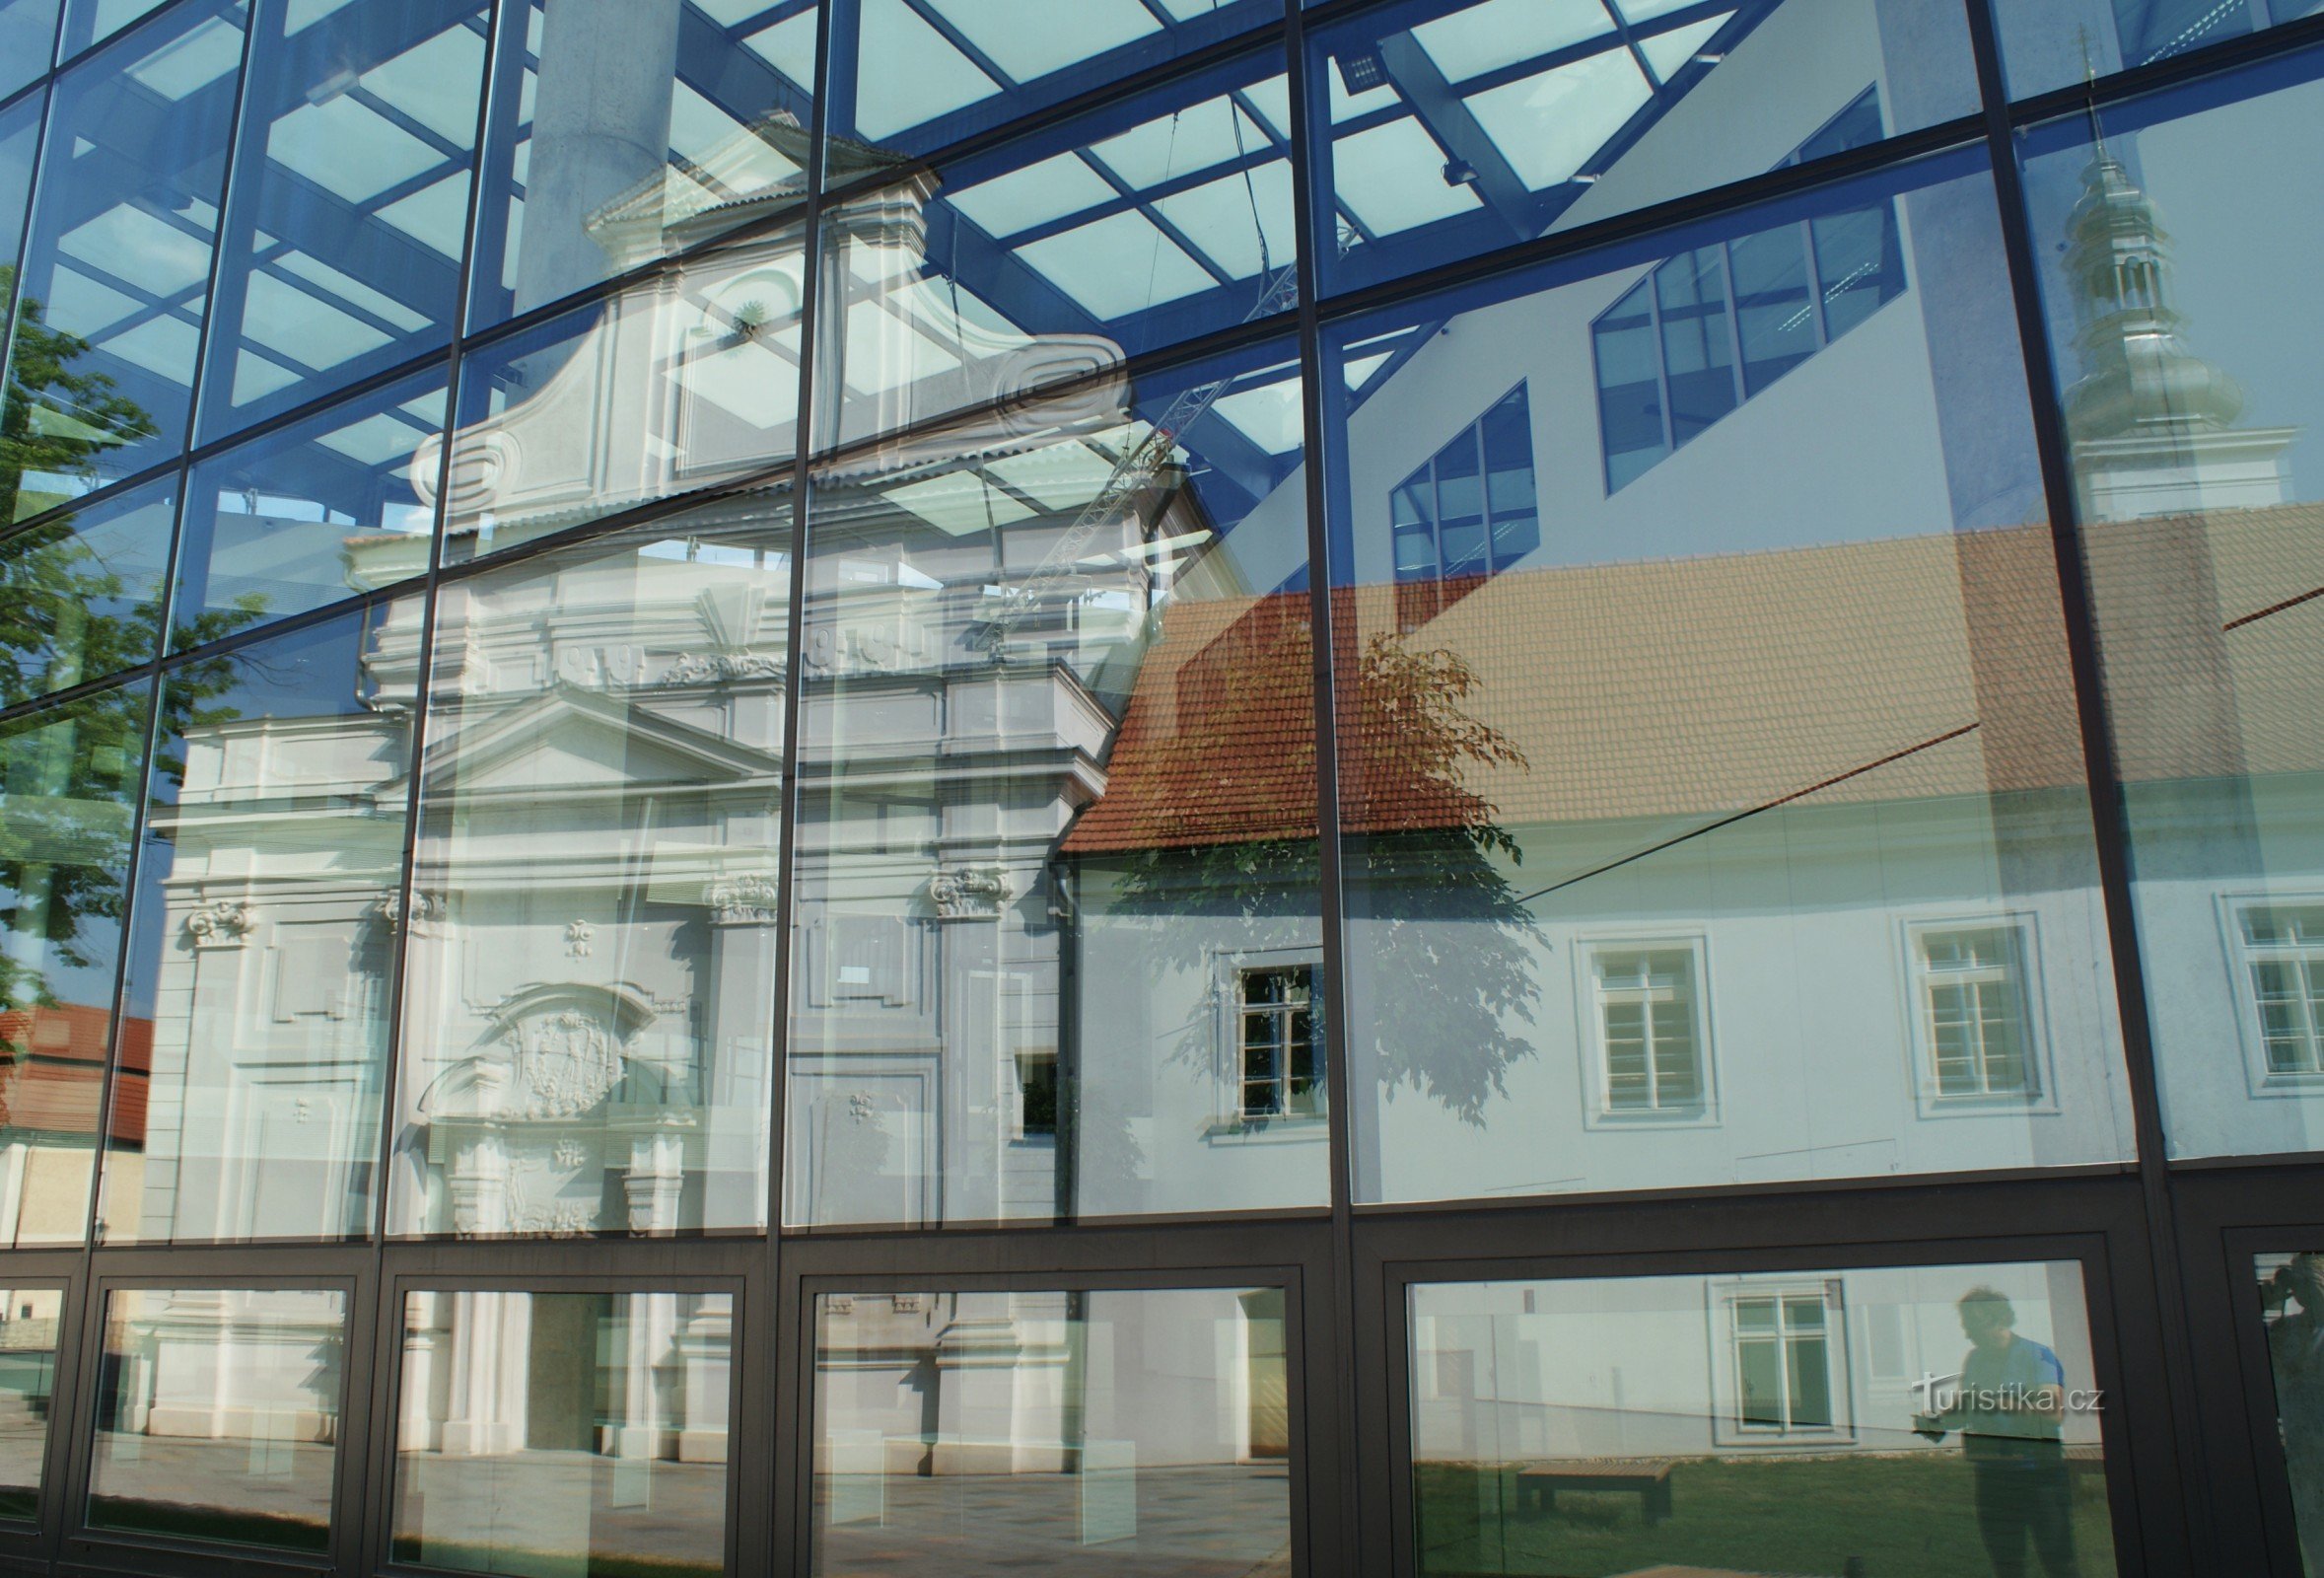 reflet dans la façade sud dans le vitrage de l'école Škoda